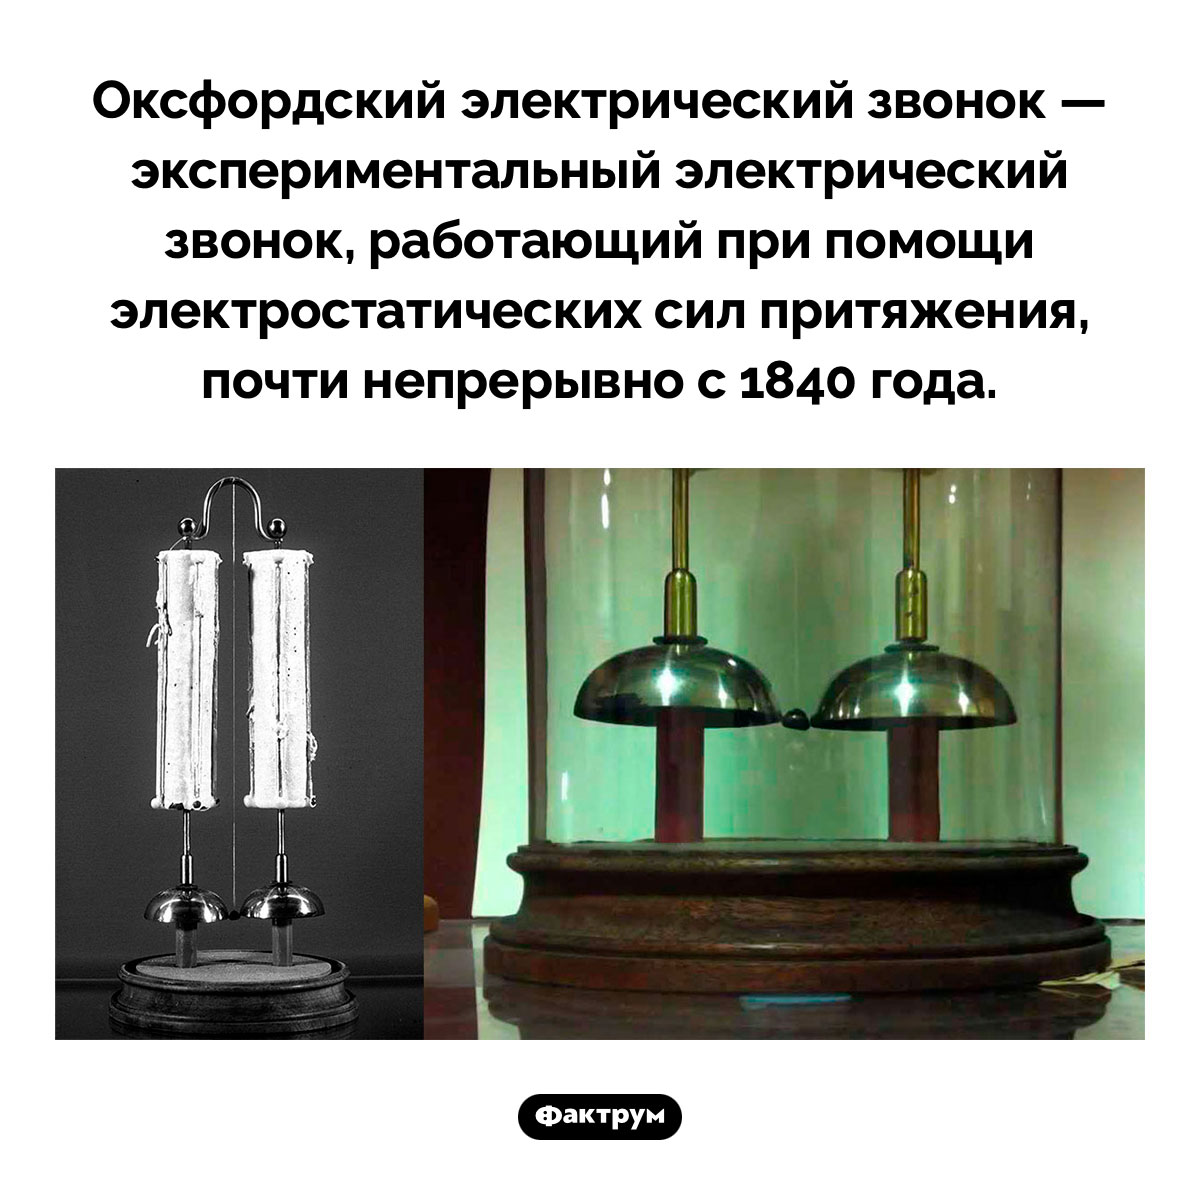 Оксфордский электрический звонок. Оксфордский электрический звонок — экспериментальный электрический звонок, работающий при помощи электростатических сил притяжения, почти непрерывно с 1840 года.